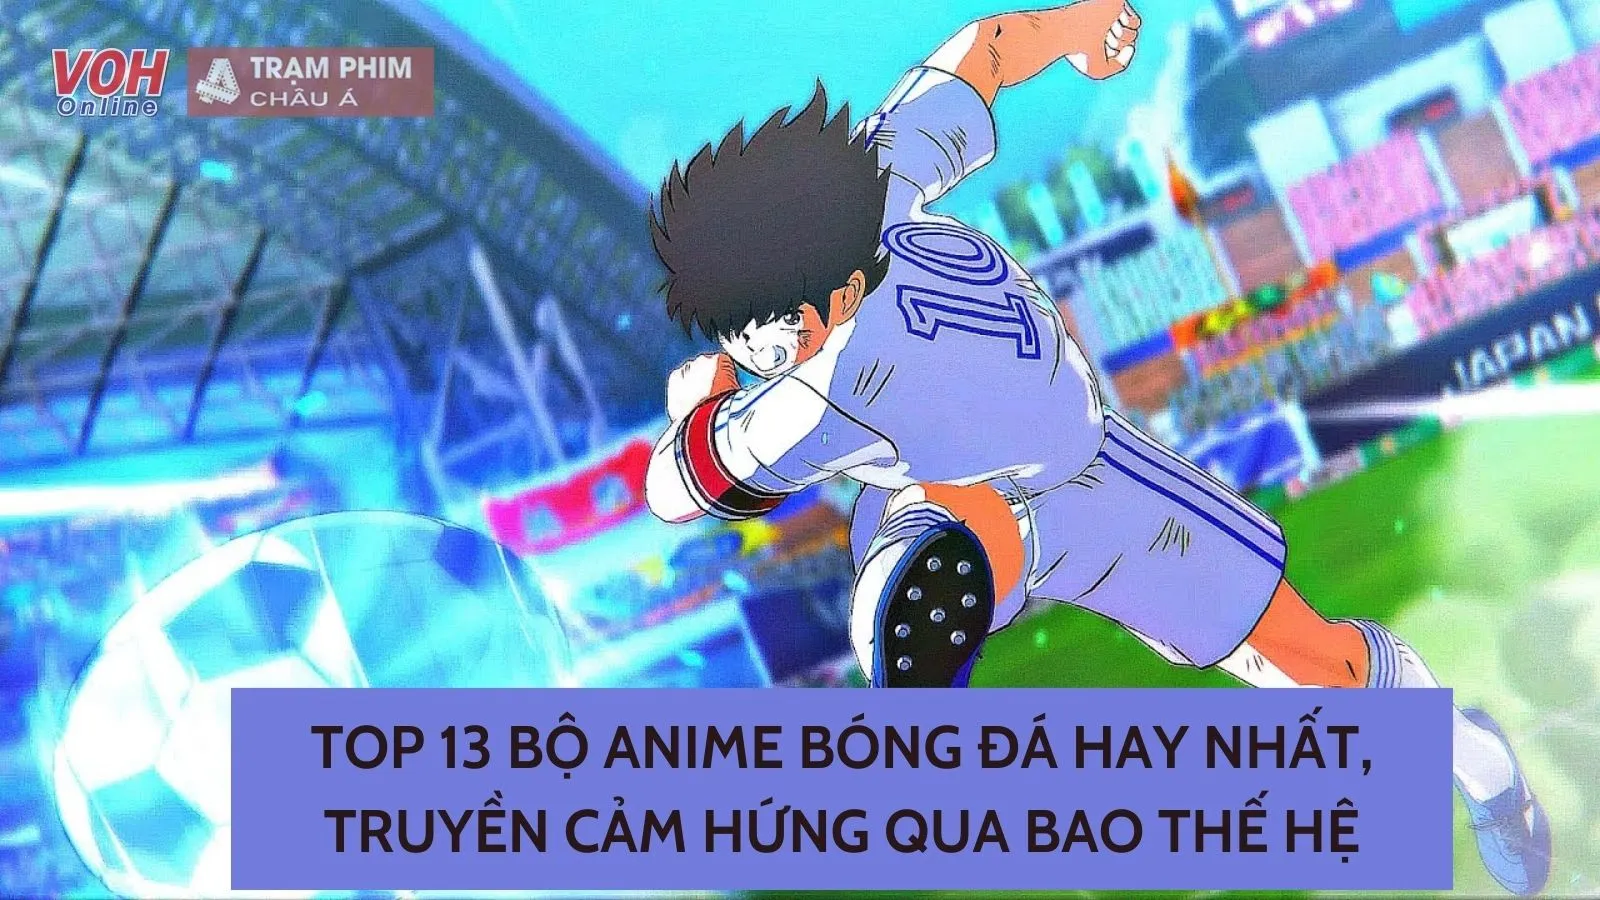 Top 10 bộ Anime bóng rổ hay nhất